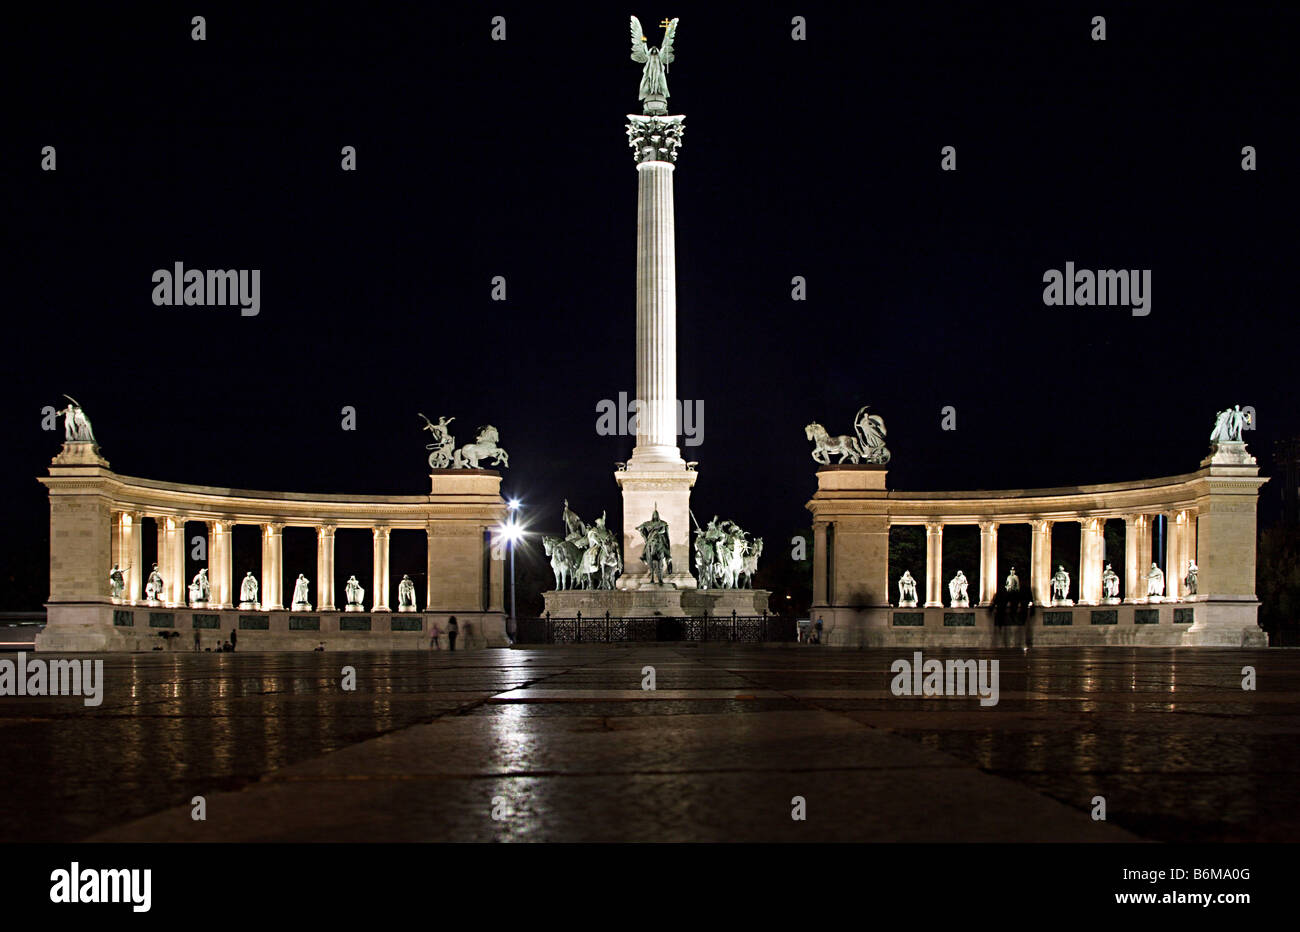 Der Heldenplatz mit dem Millennium-Denkmal in Budapest, Ungarn, nachts beleuchtet Stockfoto